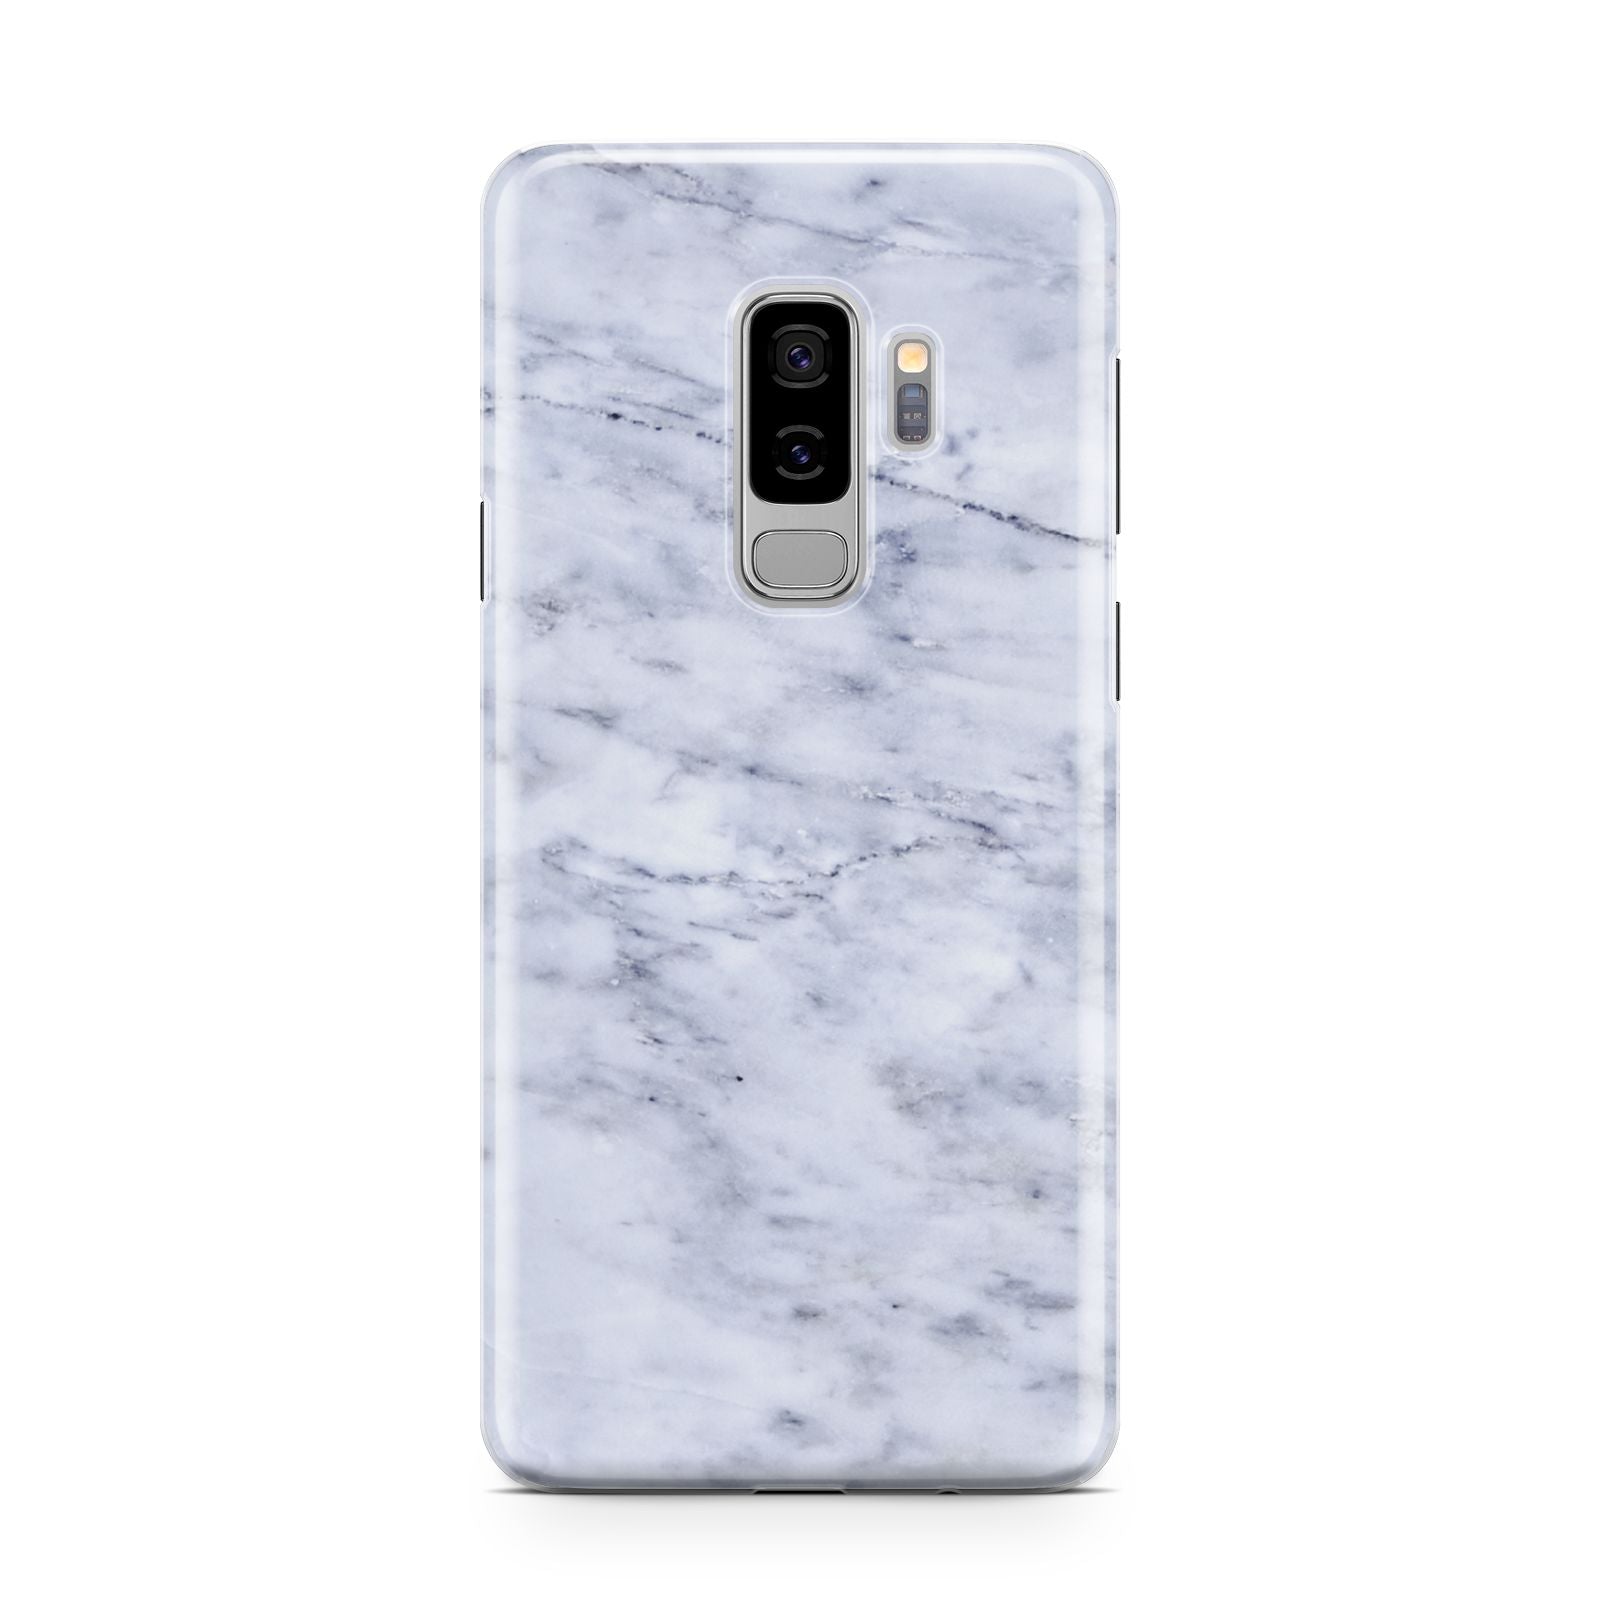 Faux Carrara Marble Print Samsung Galaxy S9 Plus Case on Silver phone